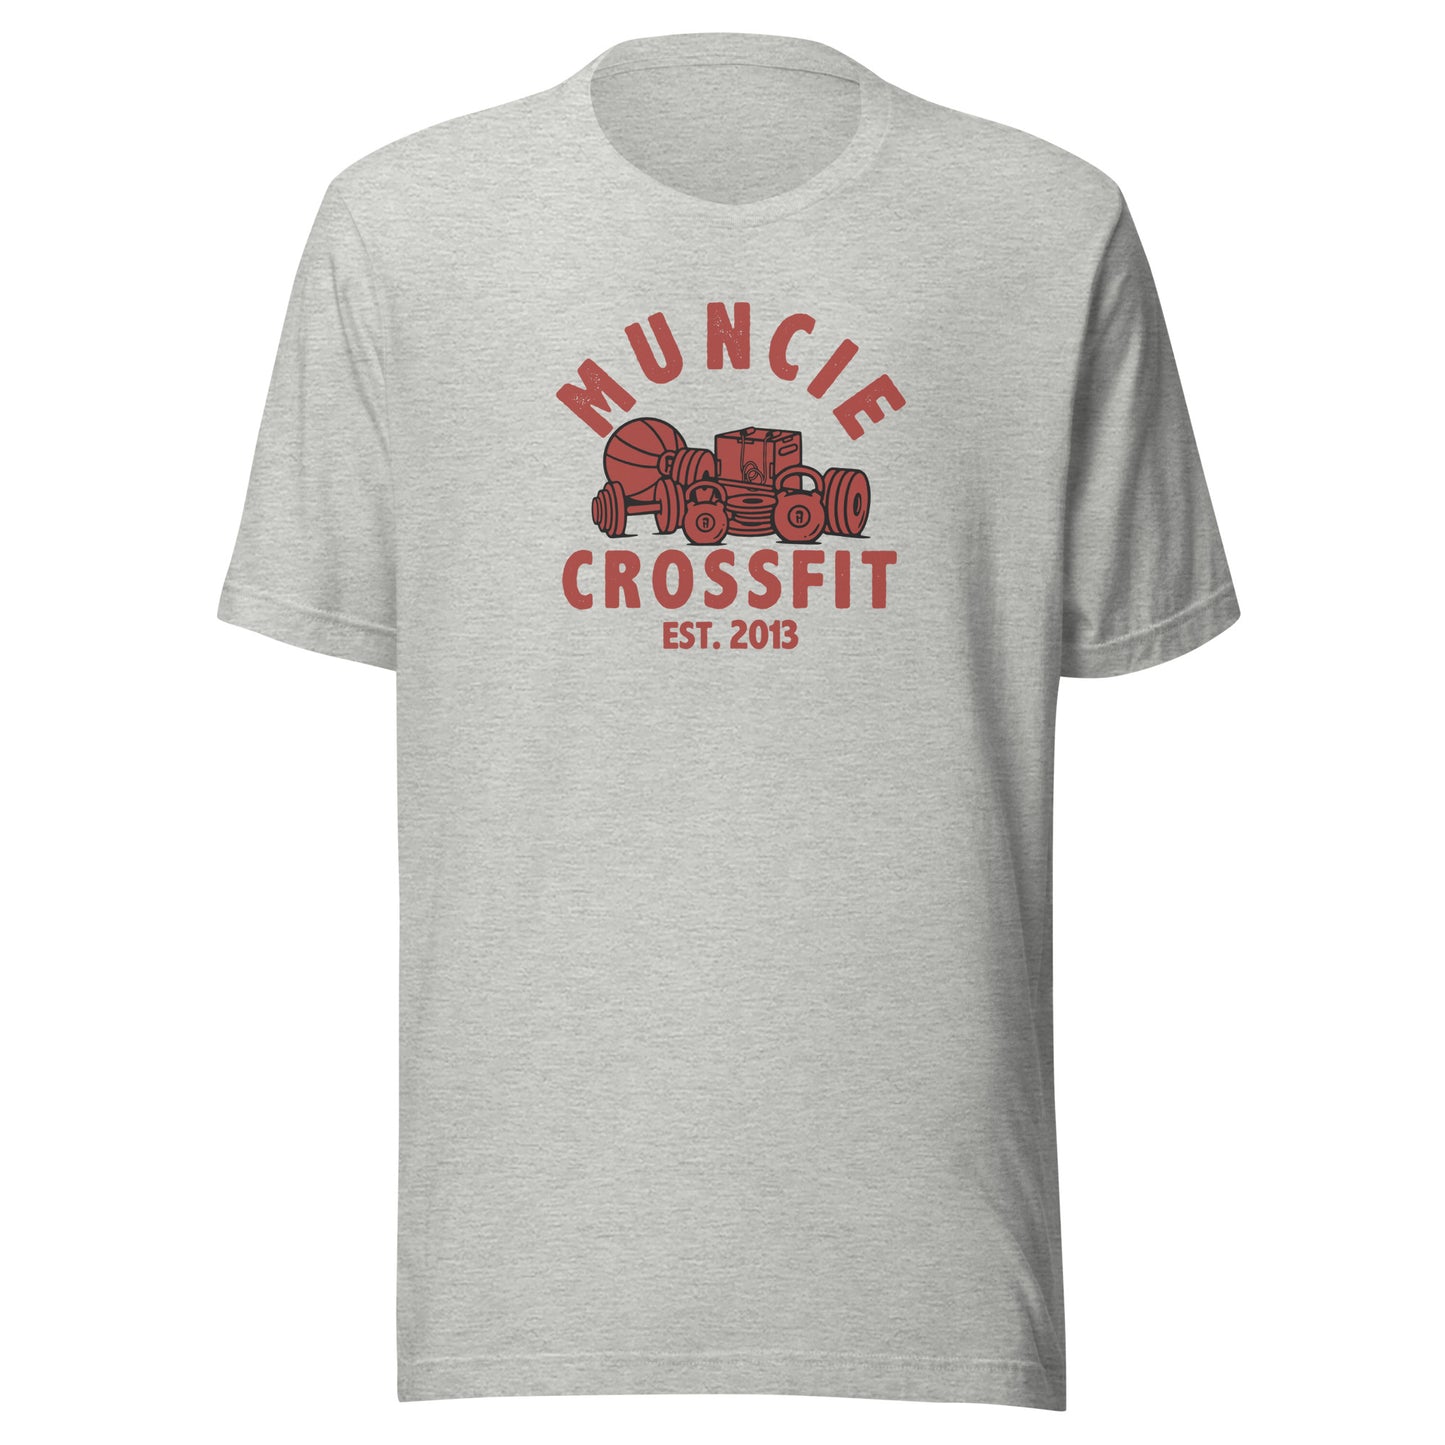 Muncie CrossFit Tee Red Logo